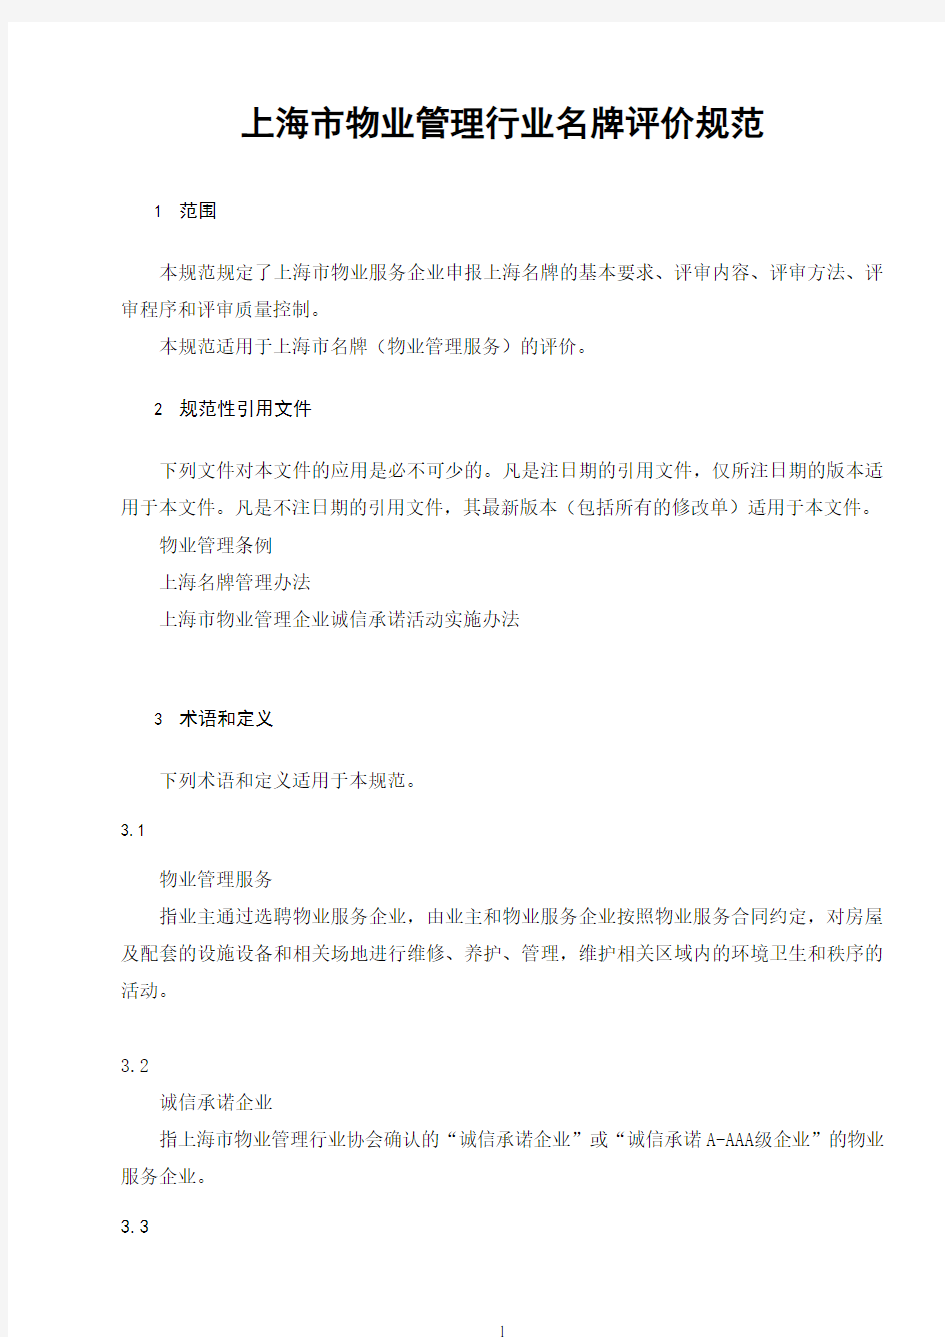 上海市物业管理行业名牌评价规范